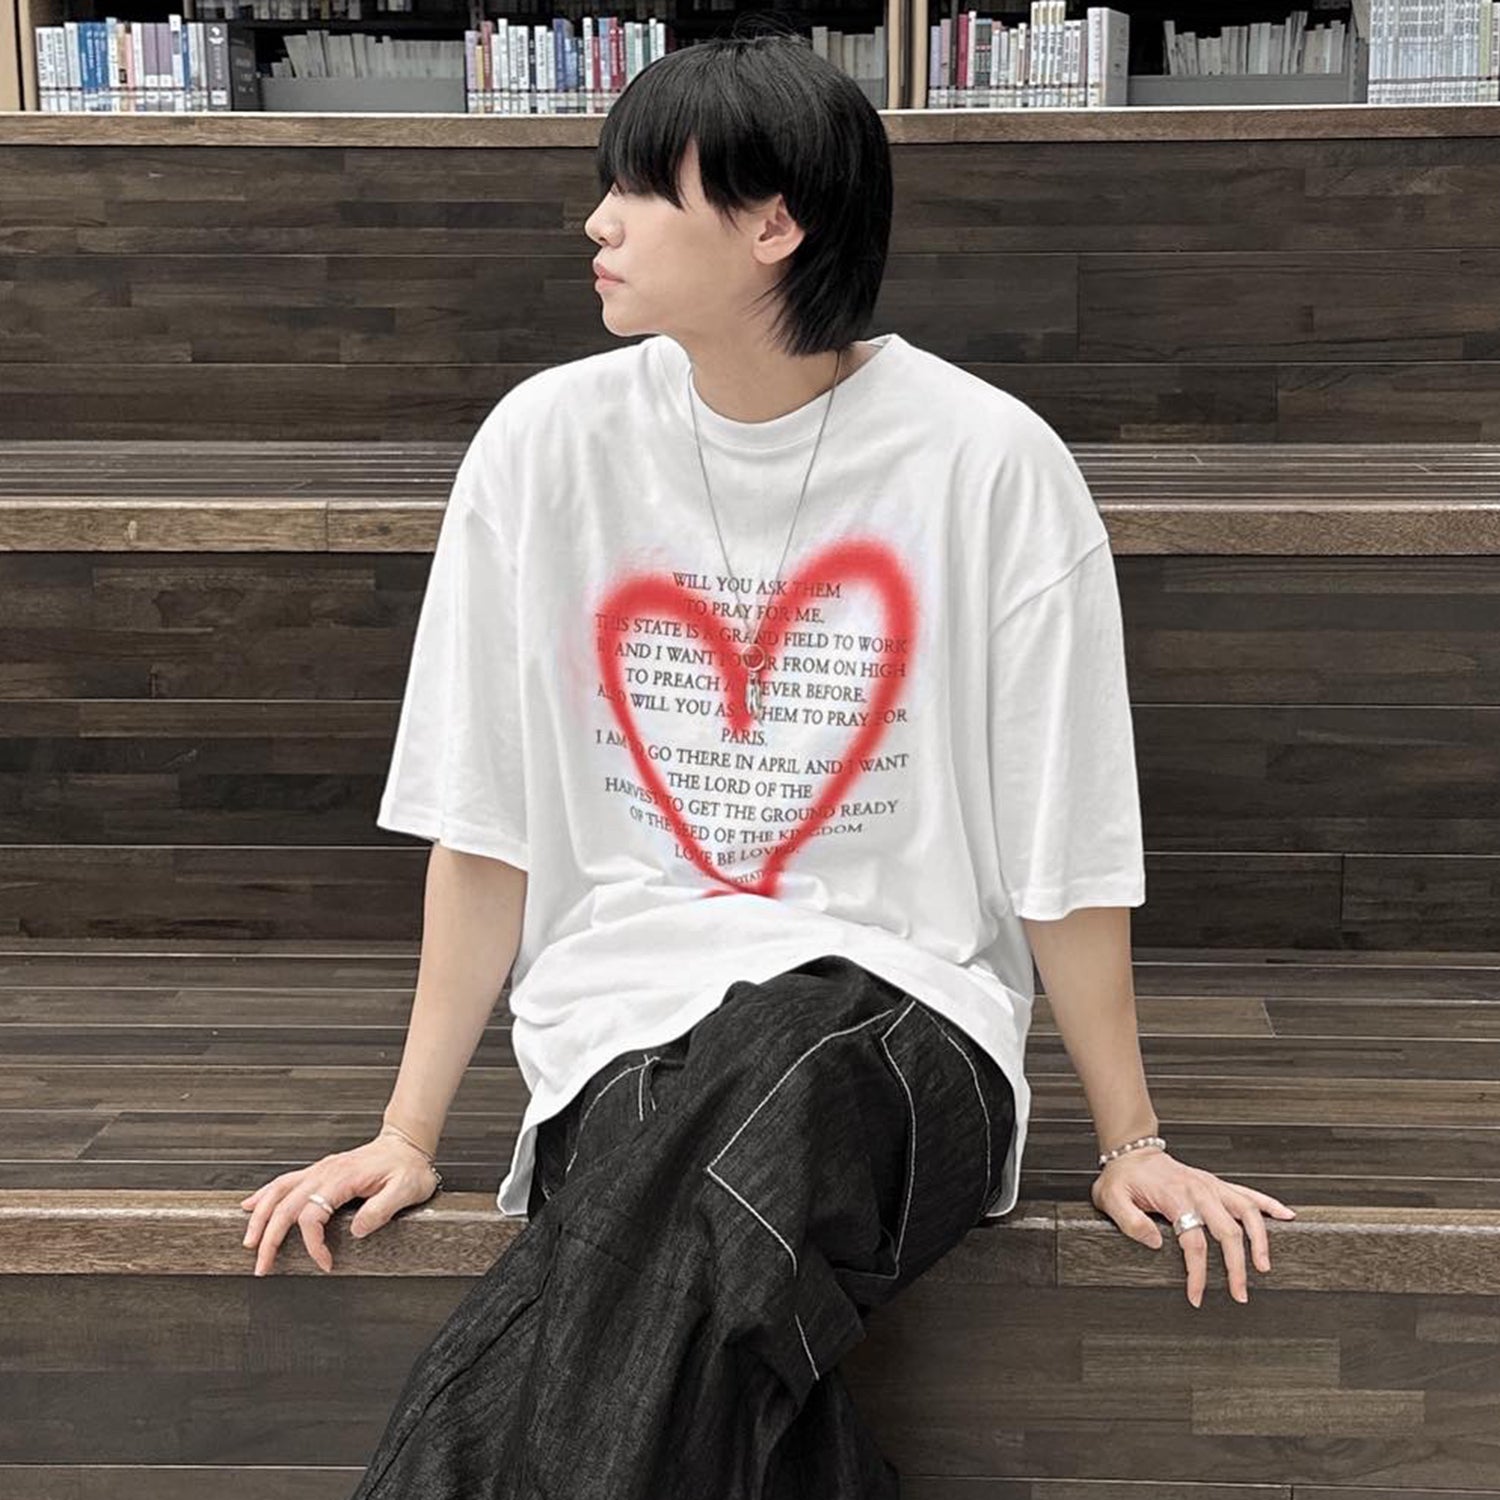 ハートグラフィックTシャツ / Heart graphic T-shirt – 60% - SIXTYPERCENT